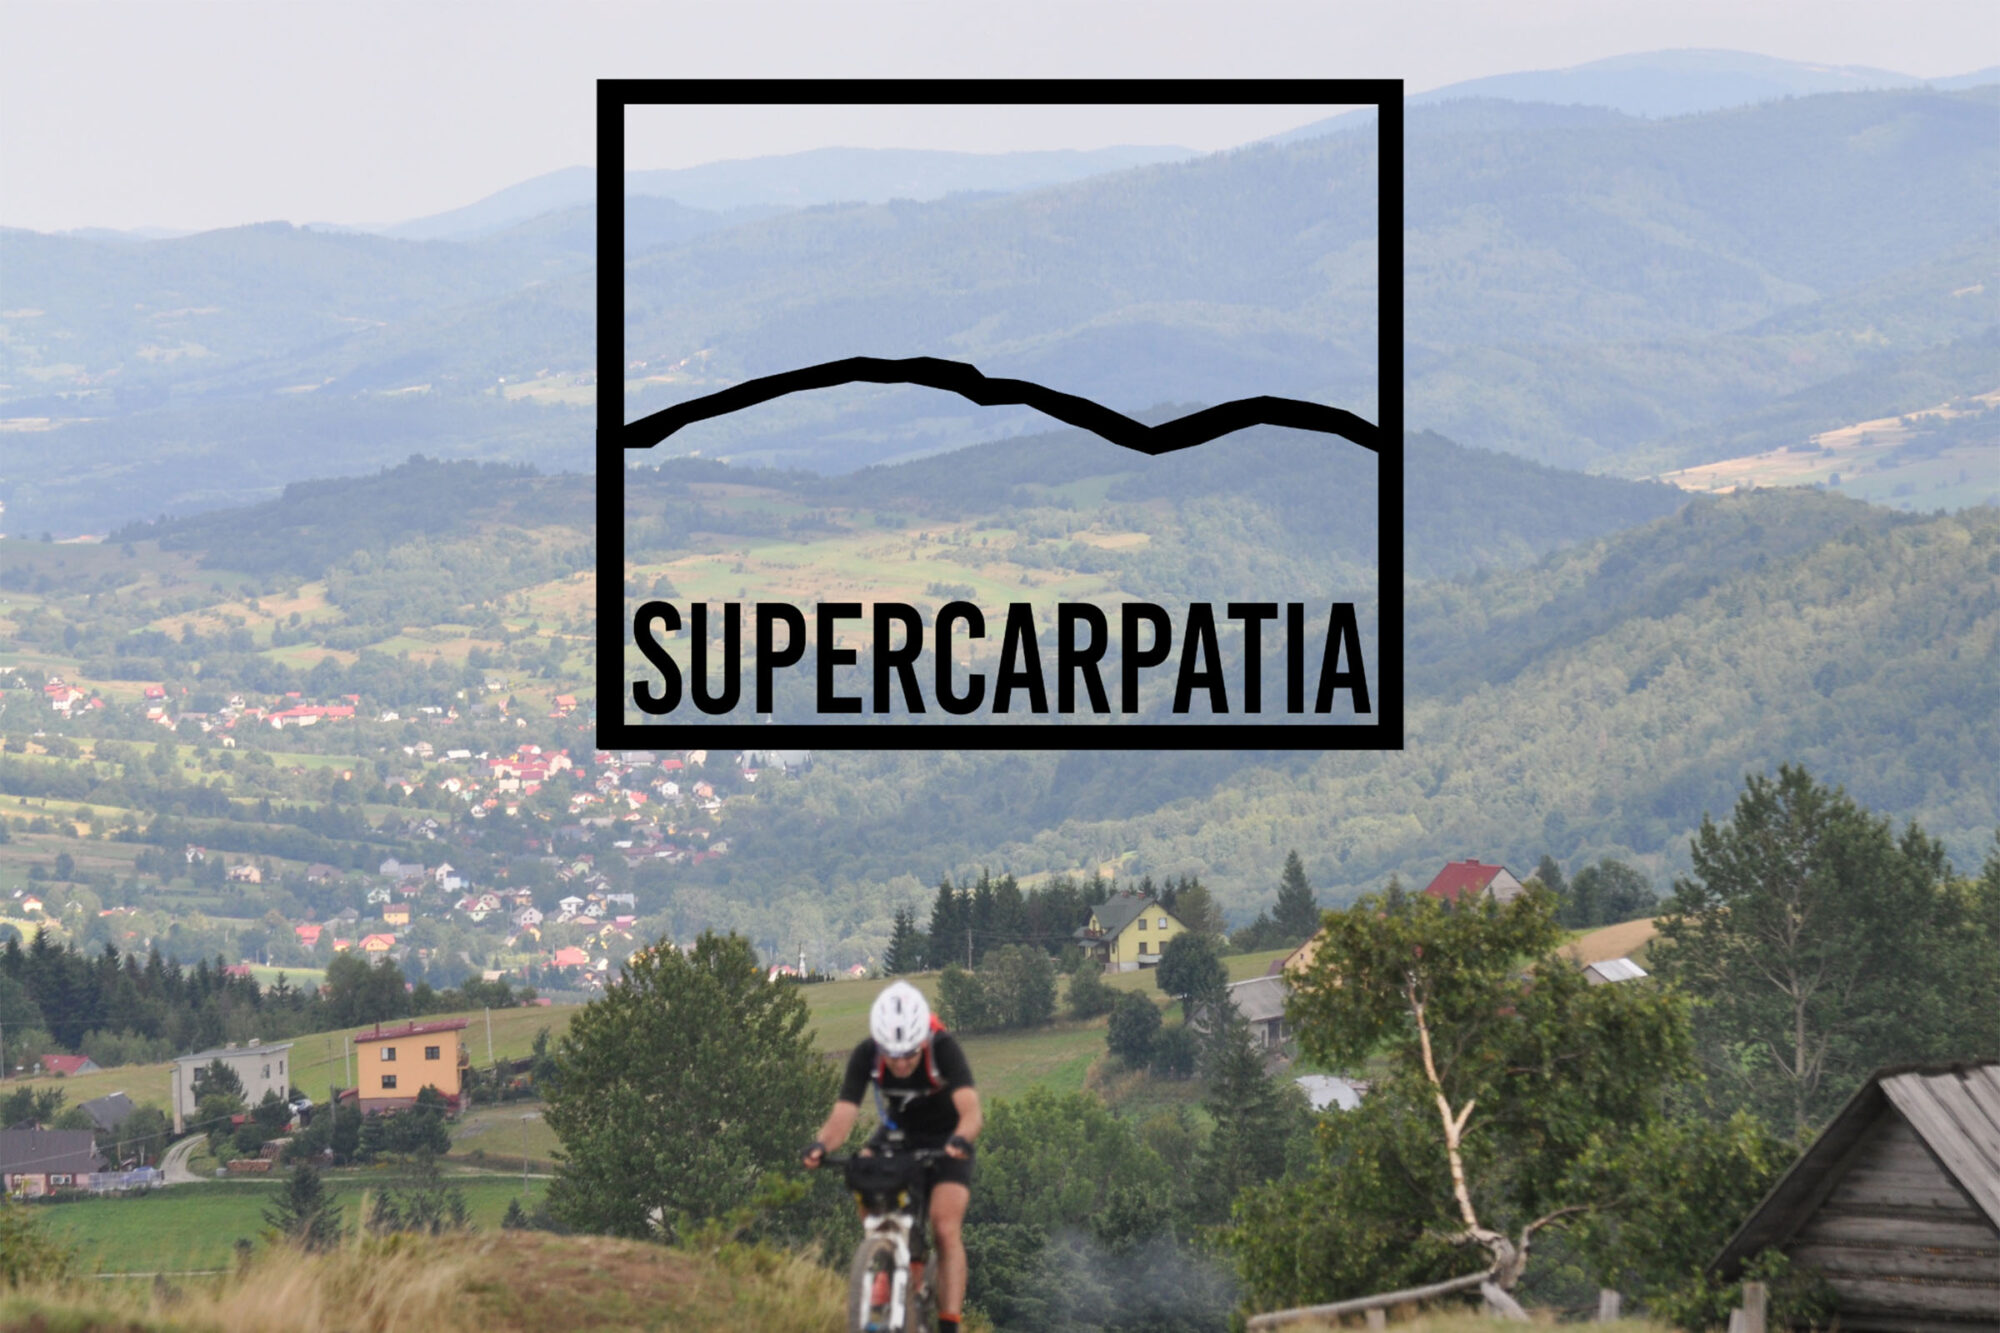 super Carpatia event